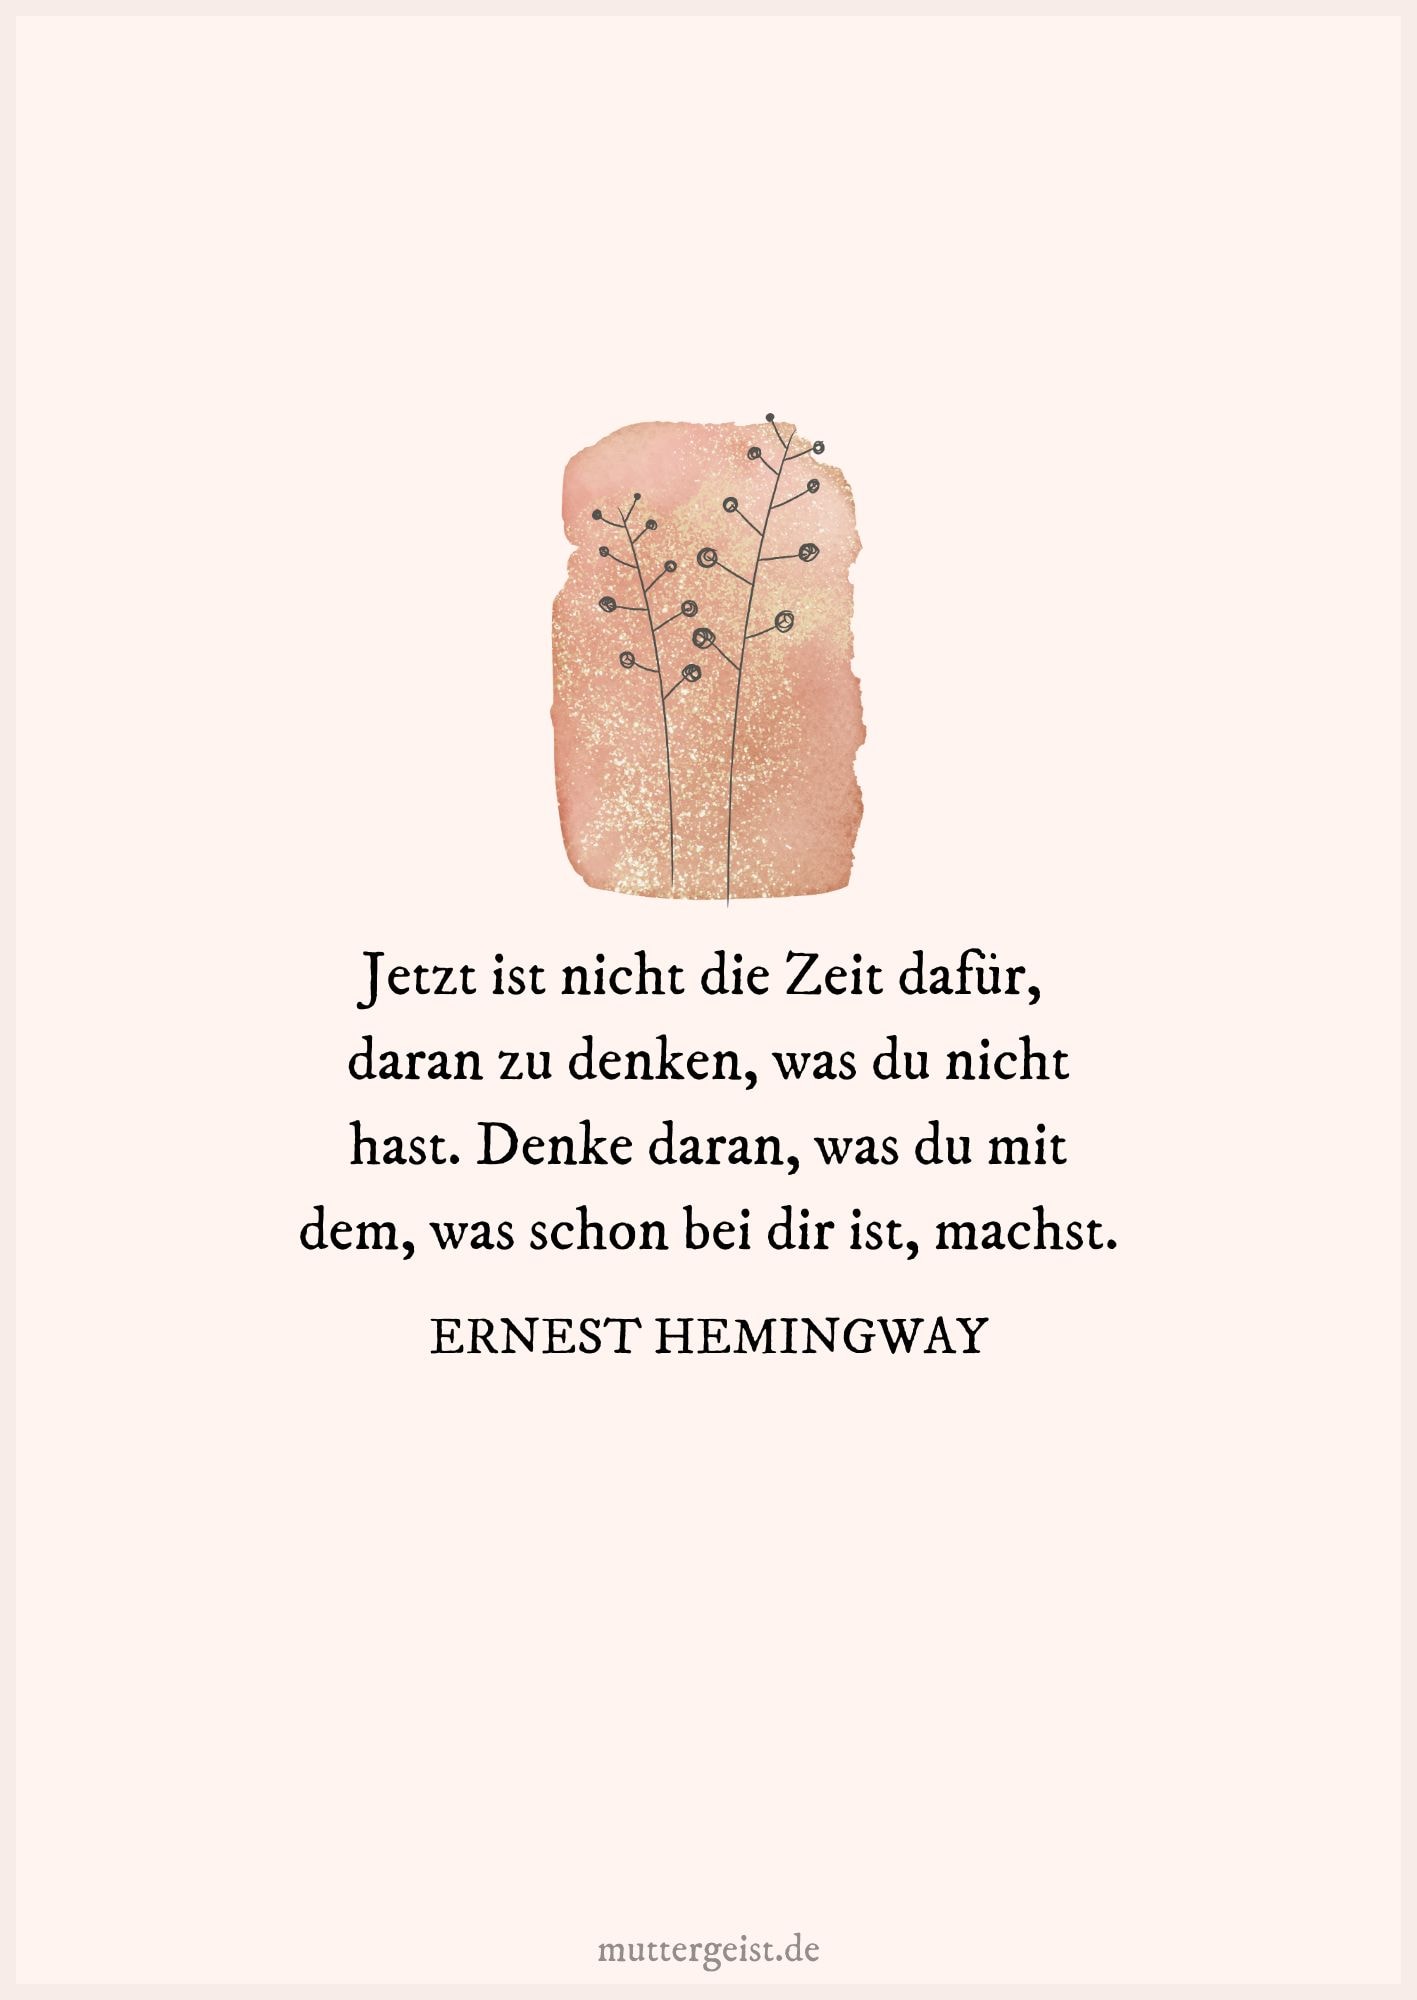 Zitat von Ernest Hemingway über die vergehende Zeit